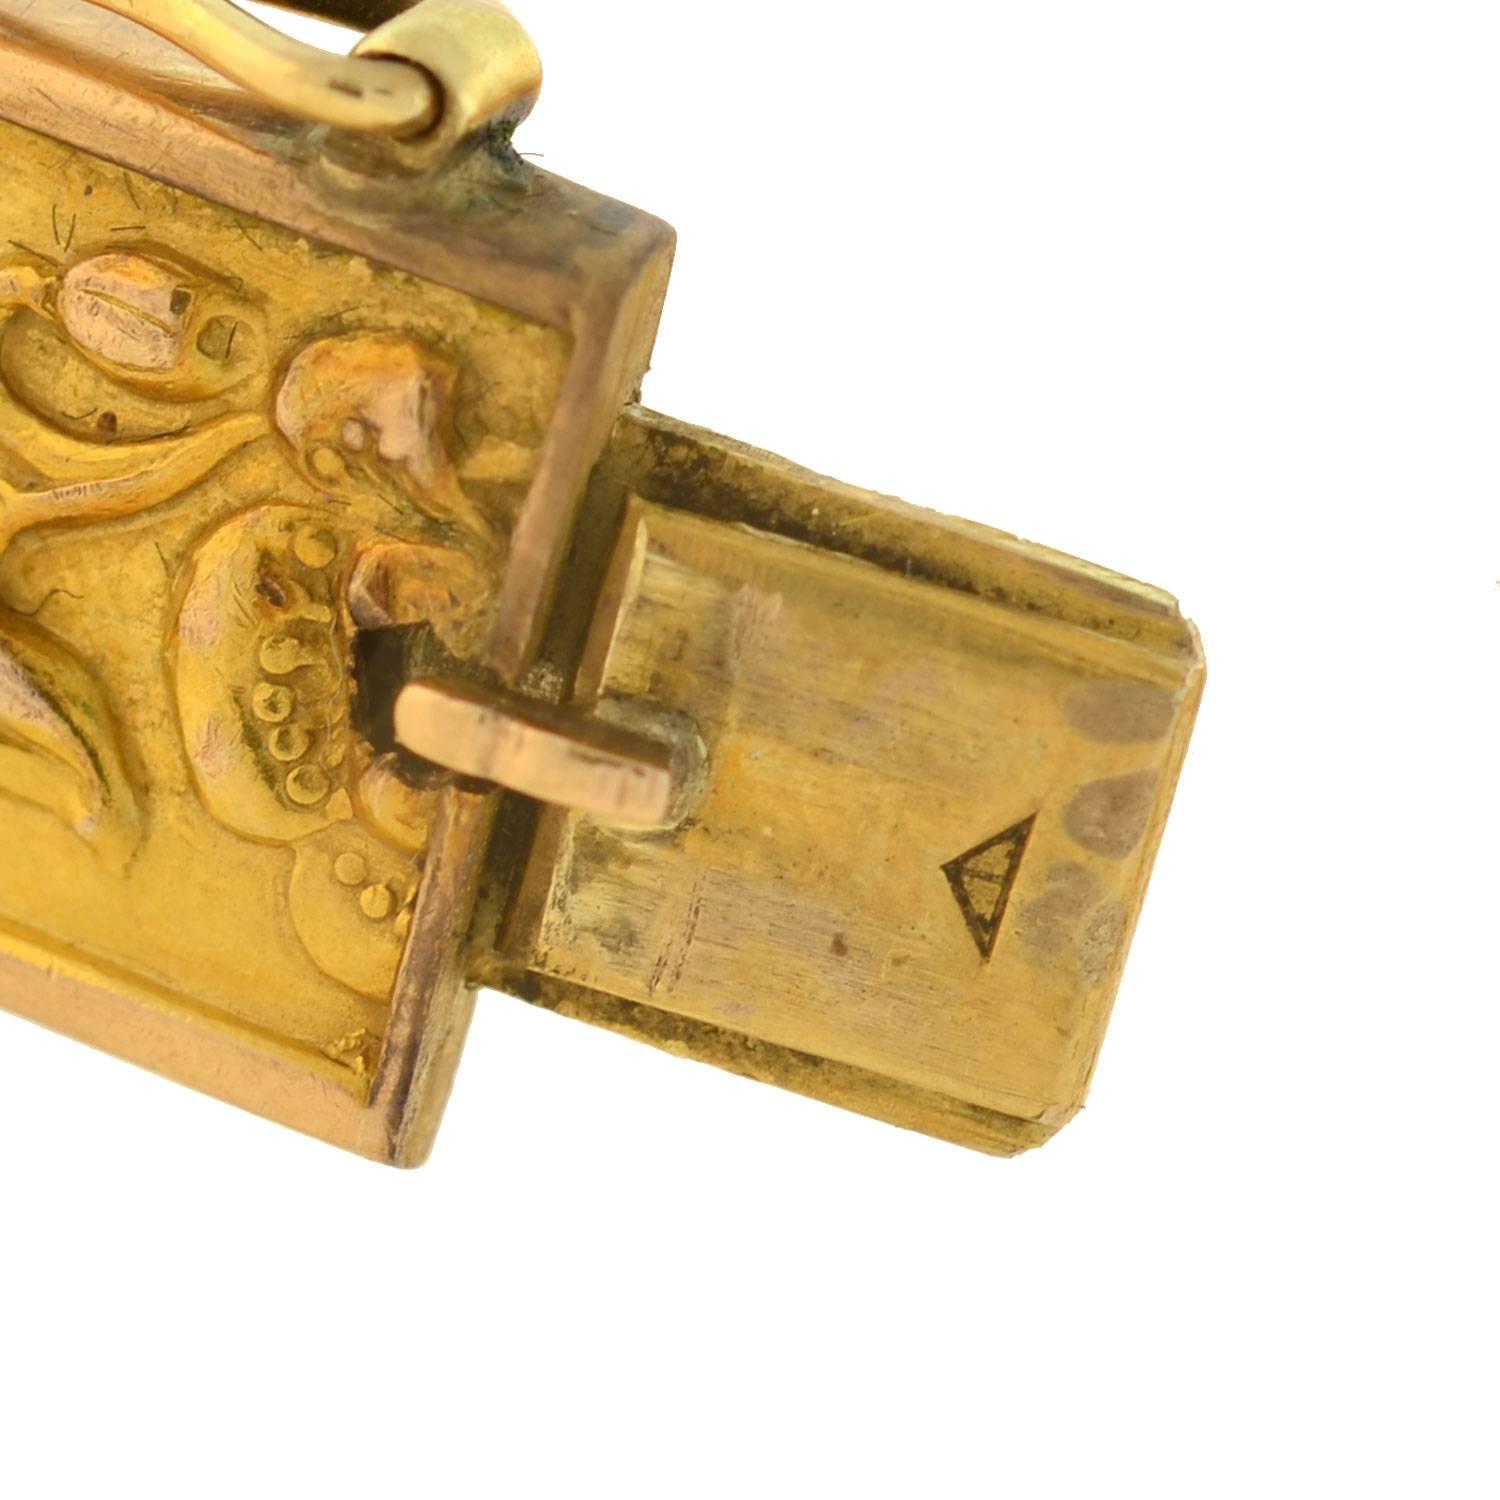 Art Nouveau Gold Repousse Bangle Bracelet With Floral Motif 1